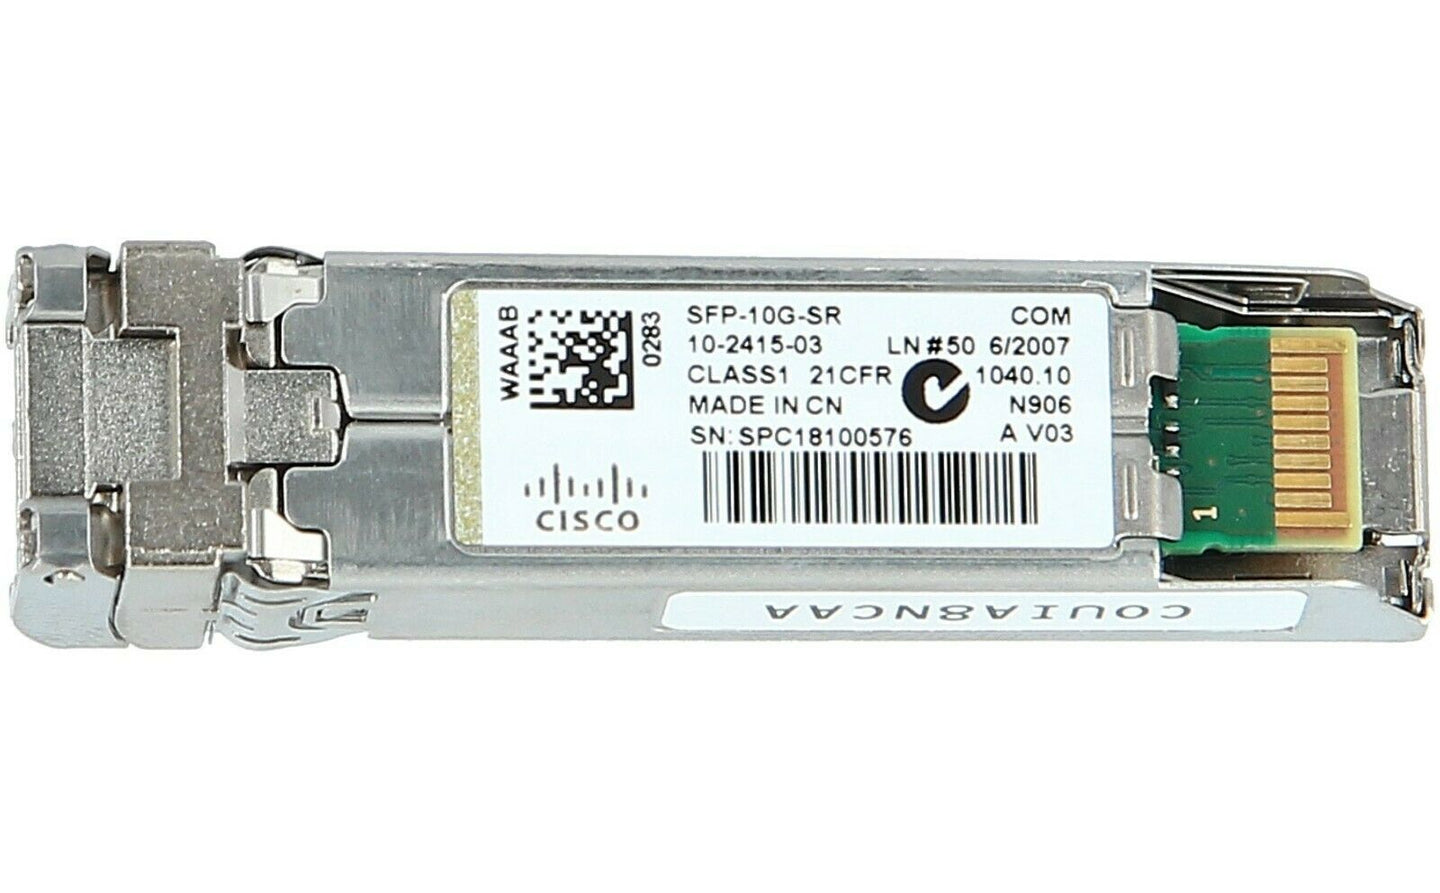 Cisco SFP-10G-SR 10-2415-03 Ethernet Transceiver Module Switch SFP 10G Fibre